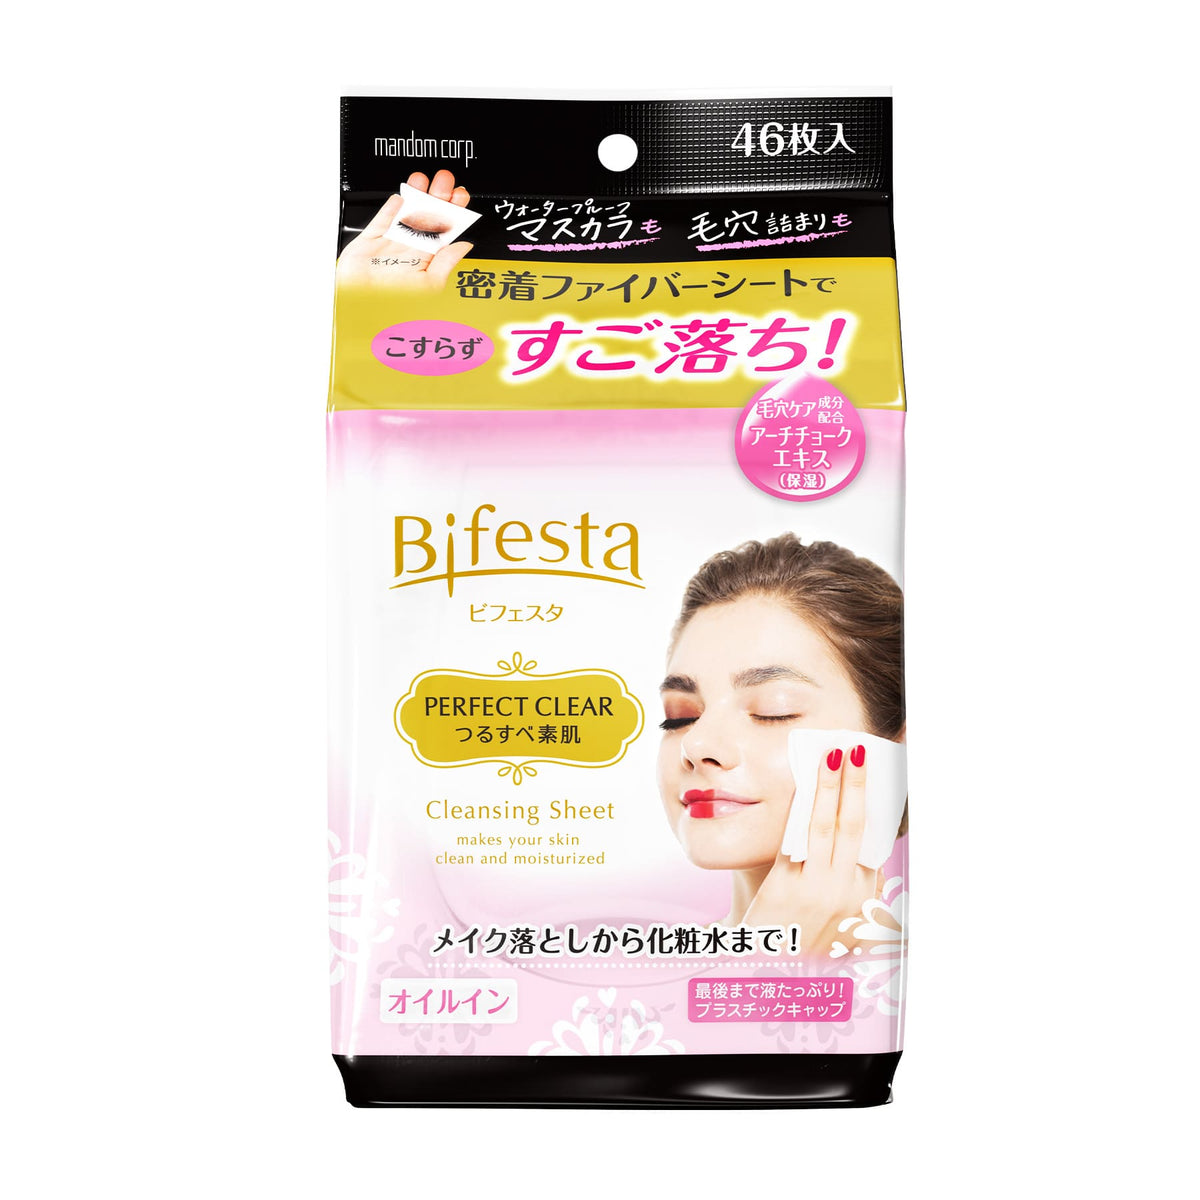 Bifesta 毛孔淨緻深層卸妝紙 (防水妝適用) 46片裝